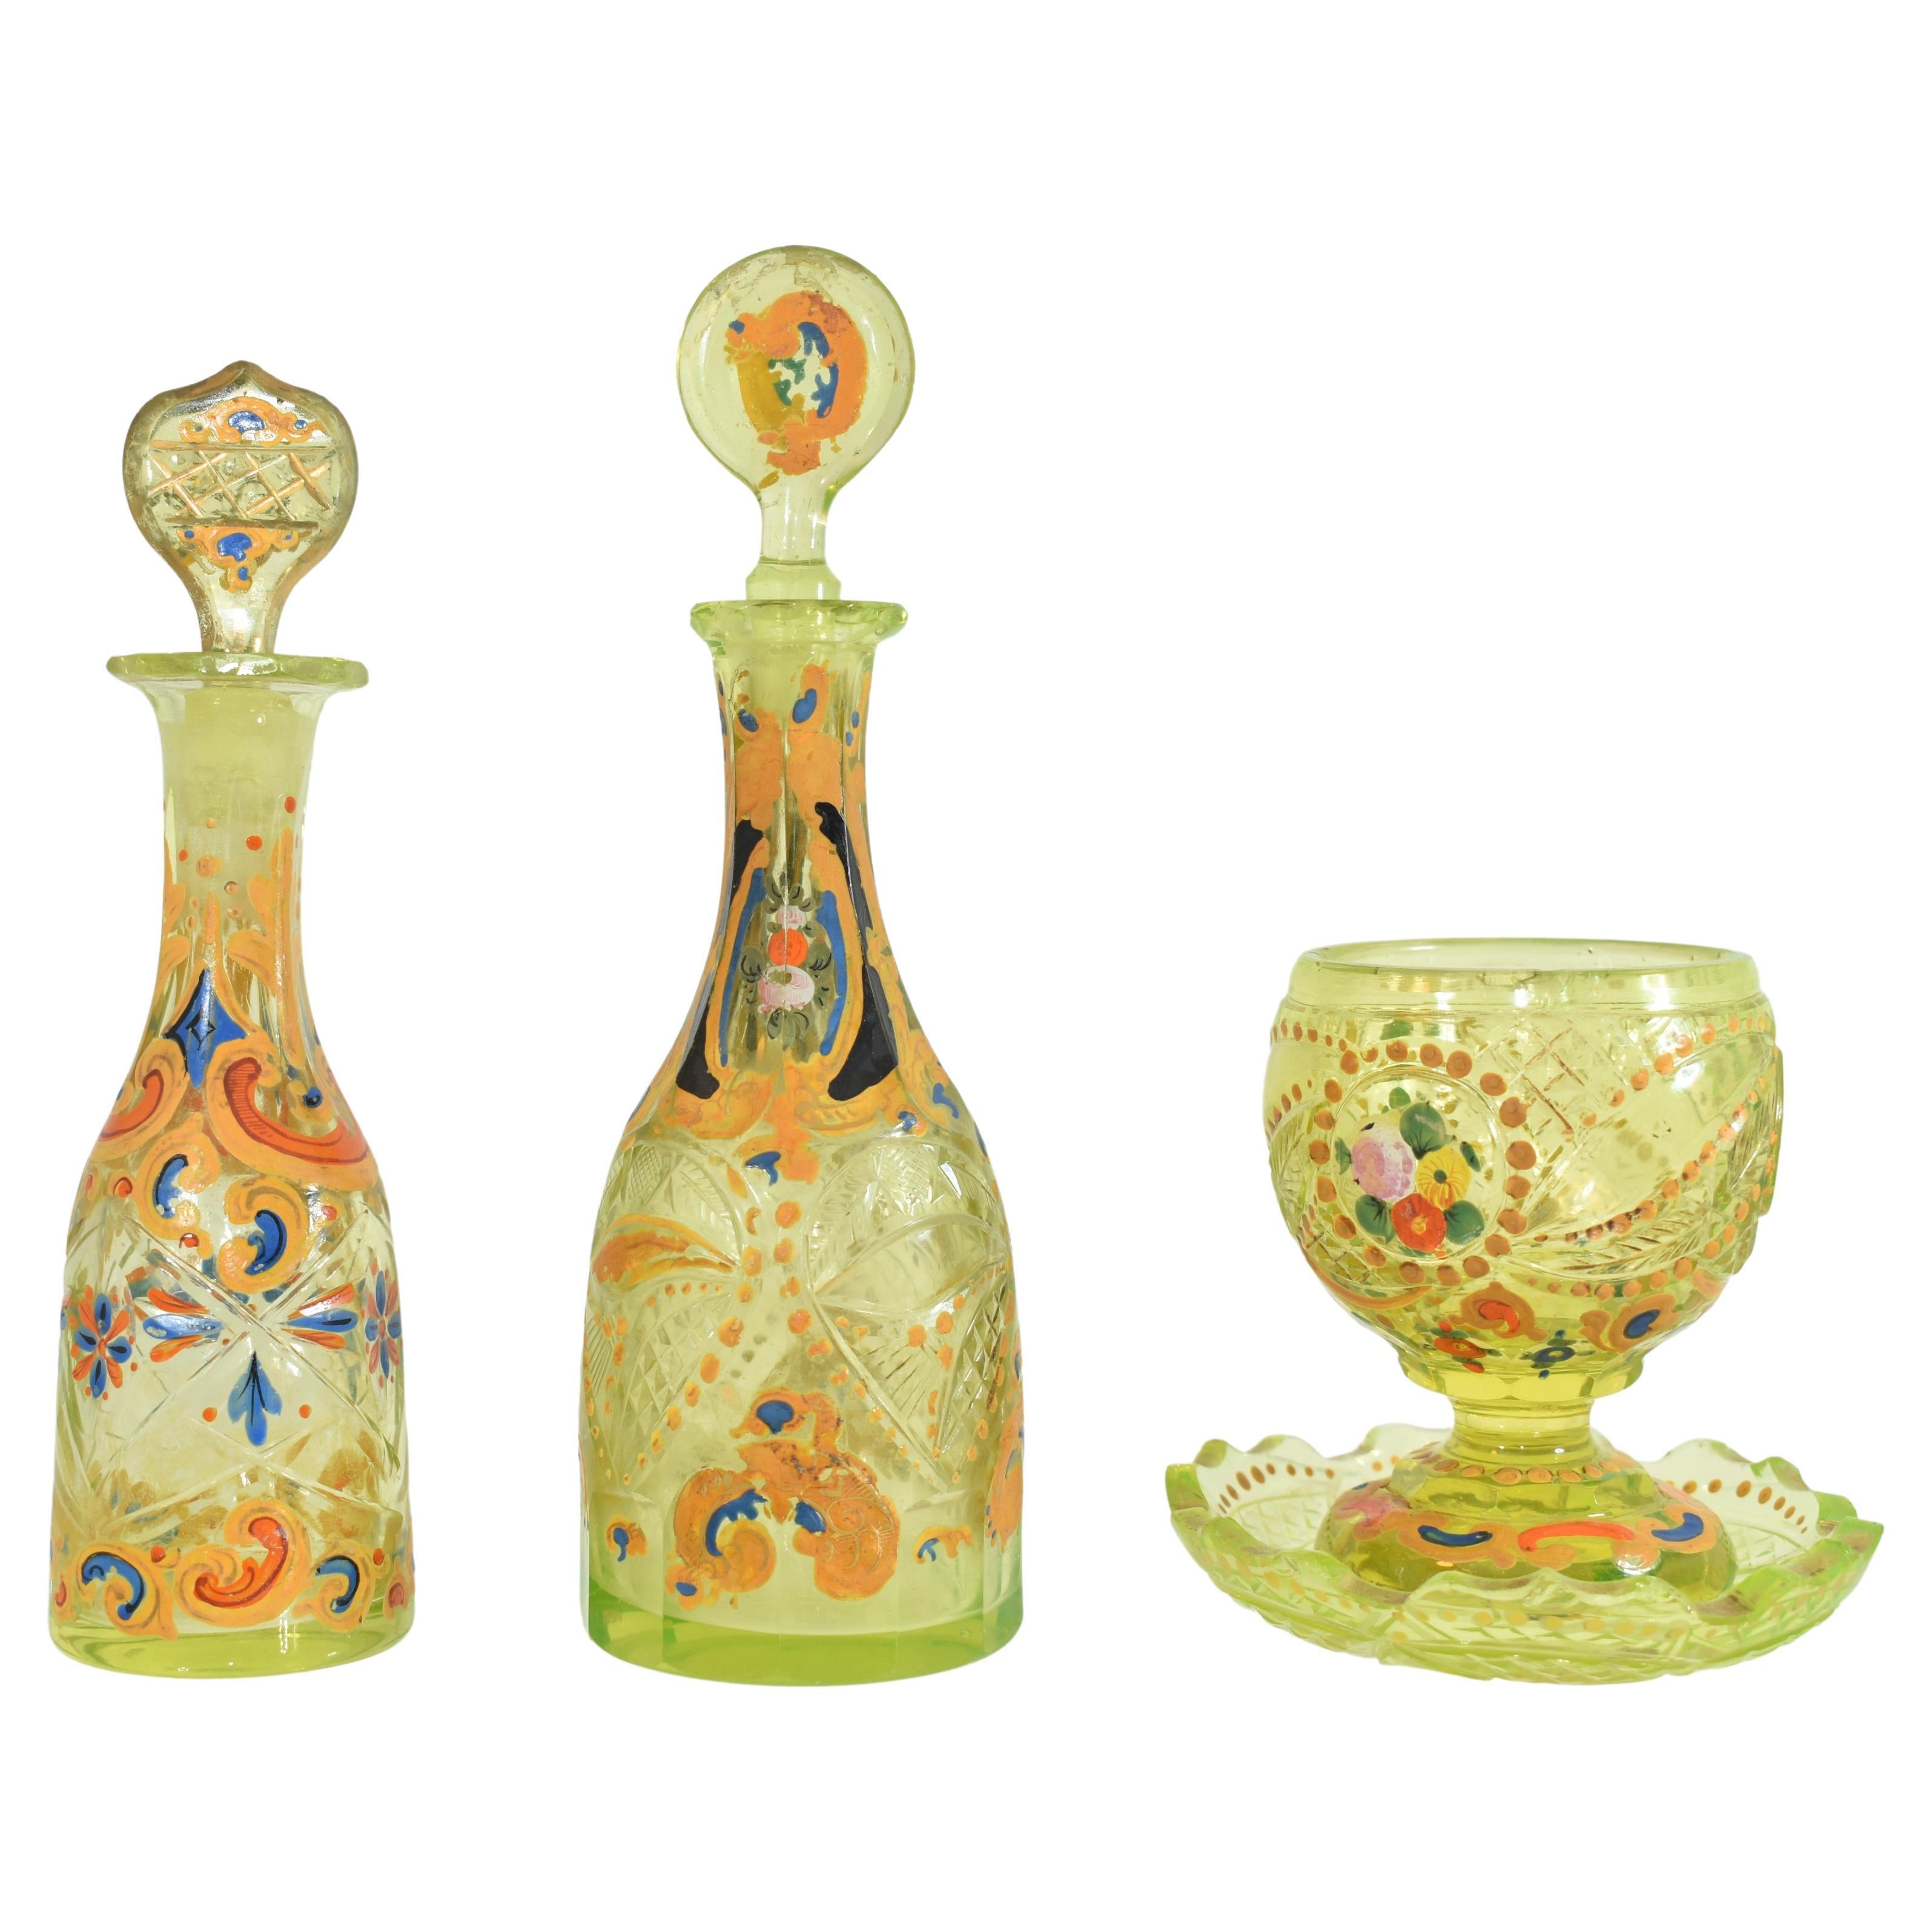 Antique Enamelled Uranium Glass Set, Bohemian for Ottoman Market, 19th Century For Sale